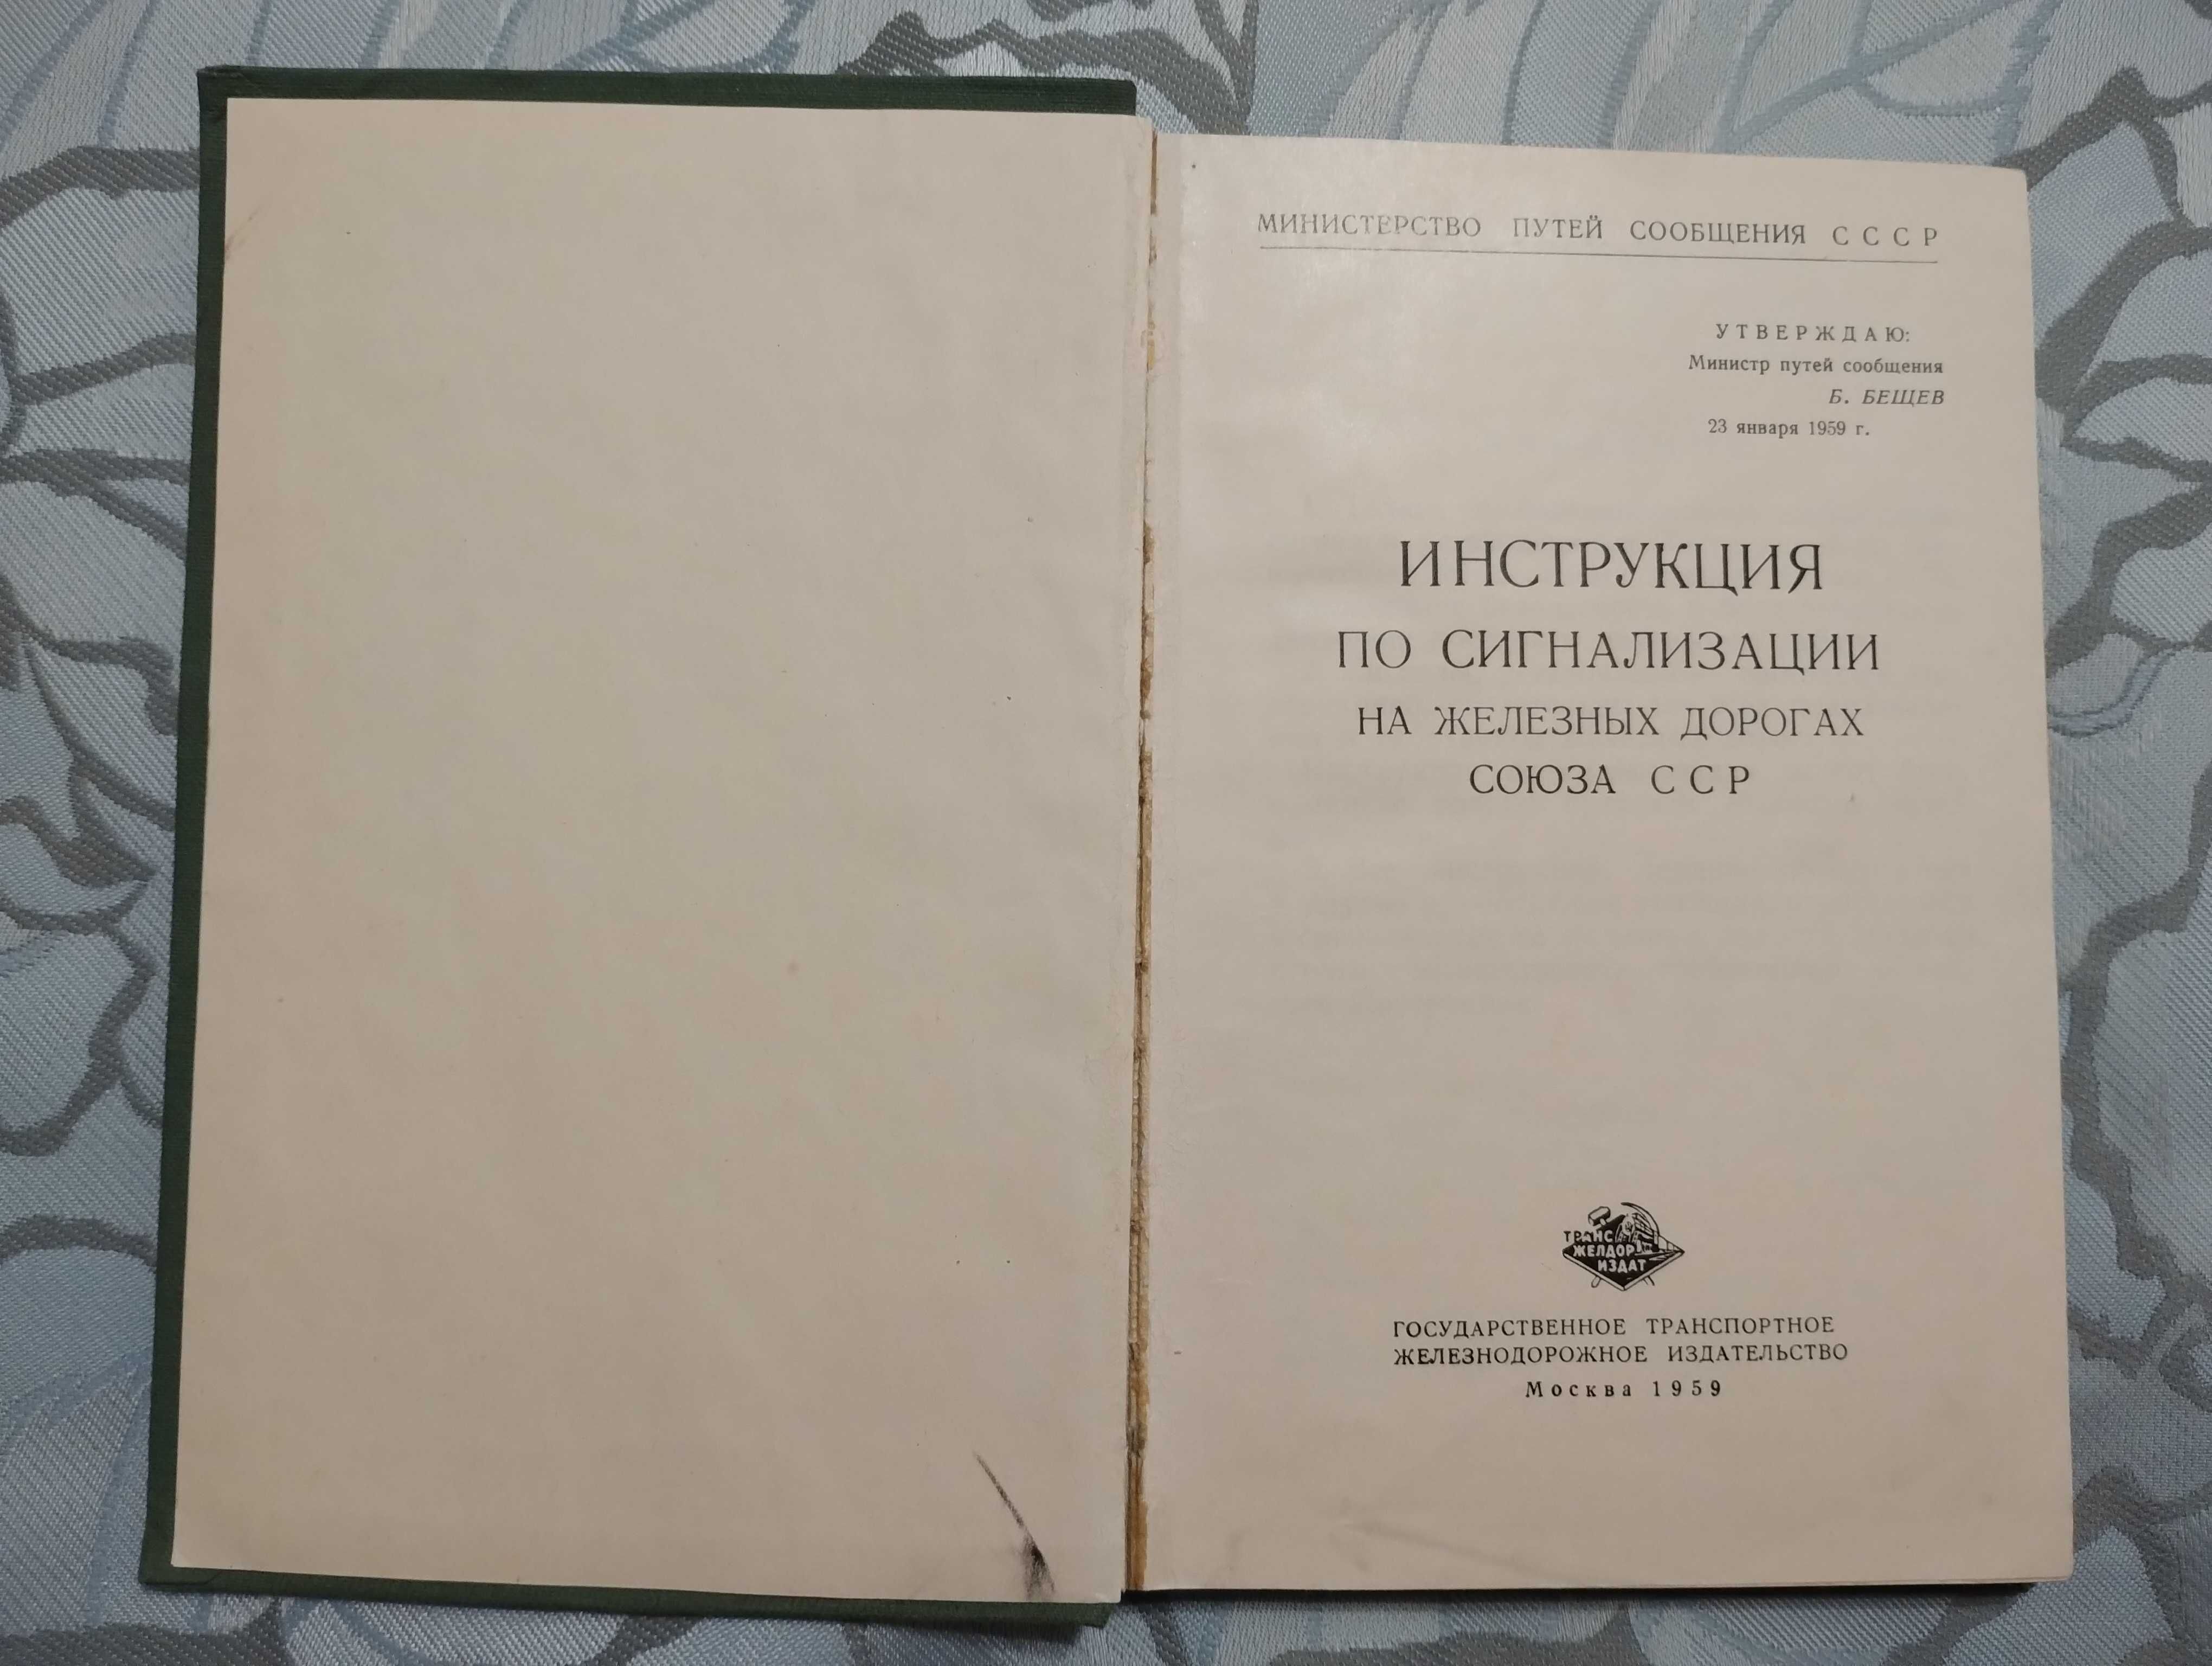 "Інструкция по сигнализации на железных дорогах союза ССР" 1959 год.